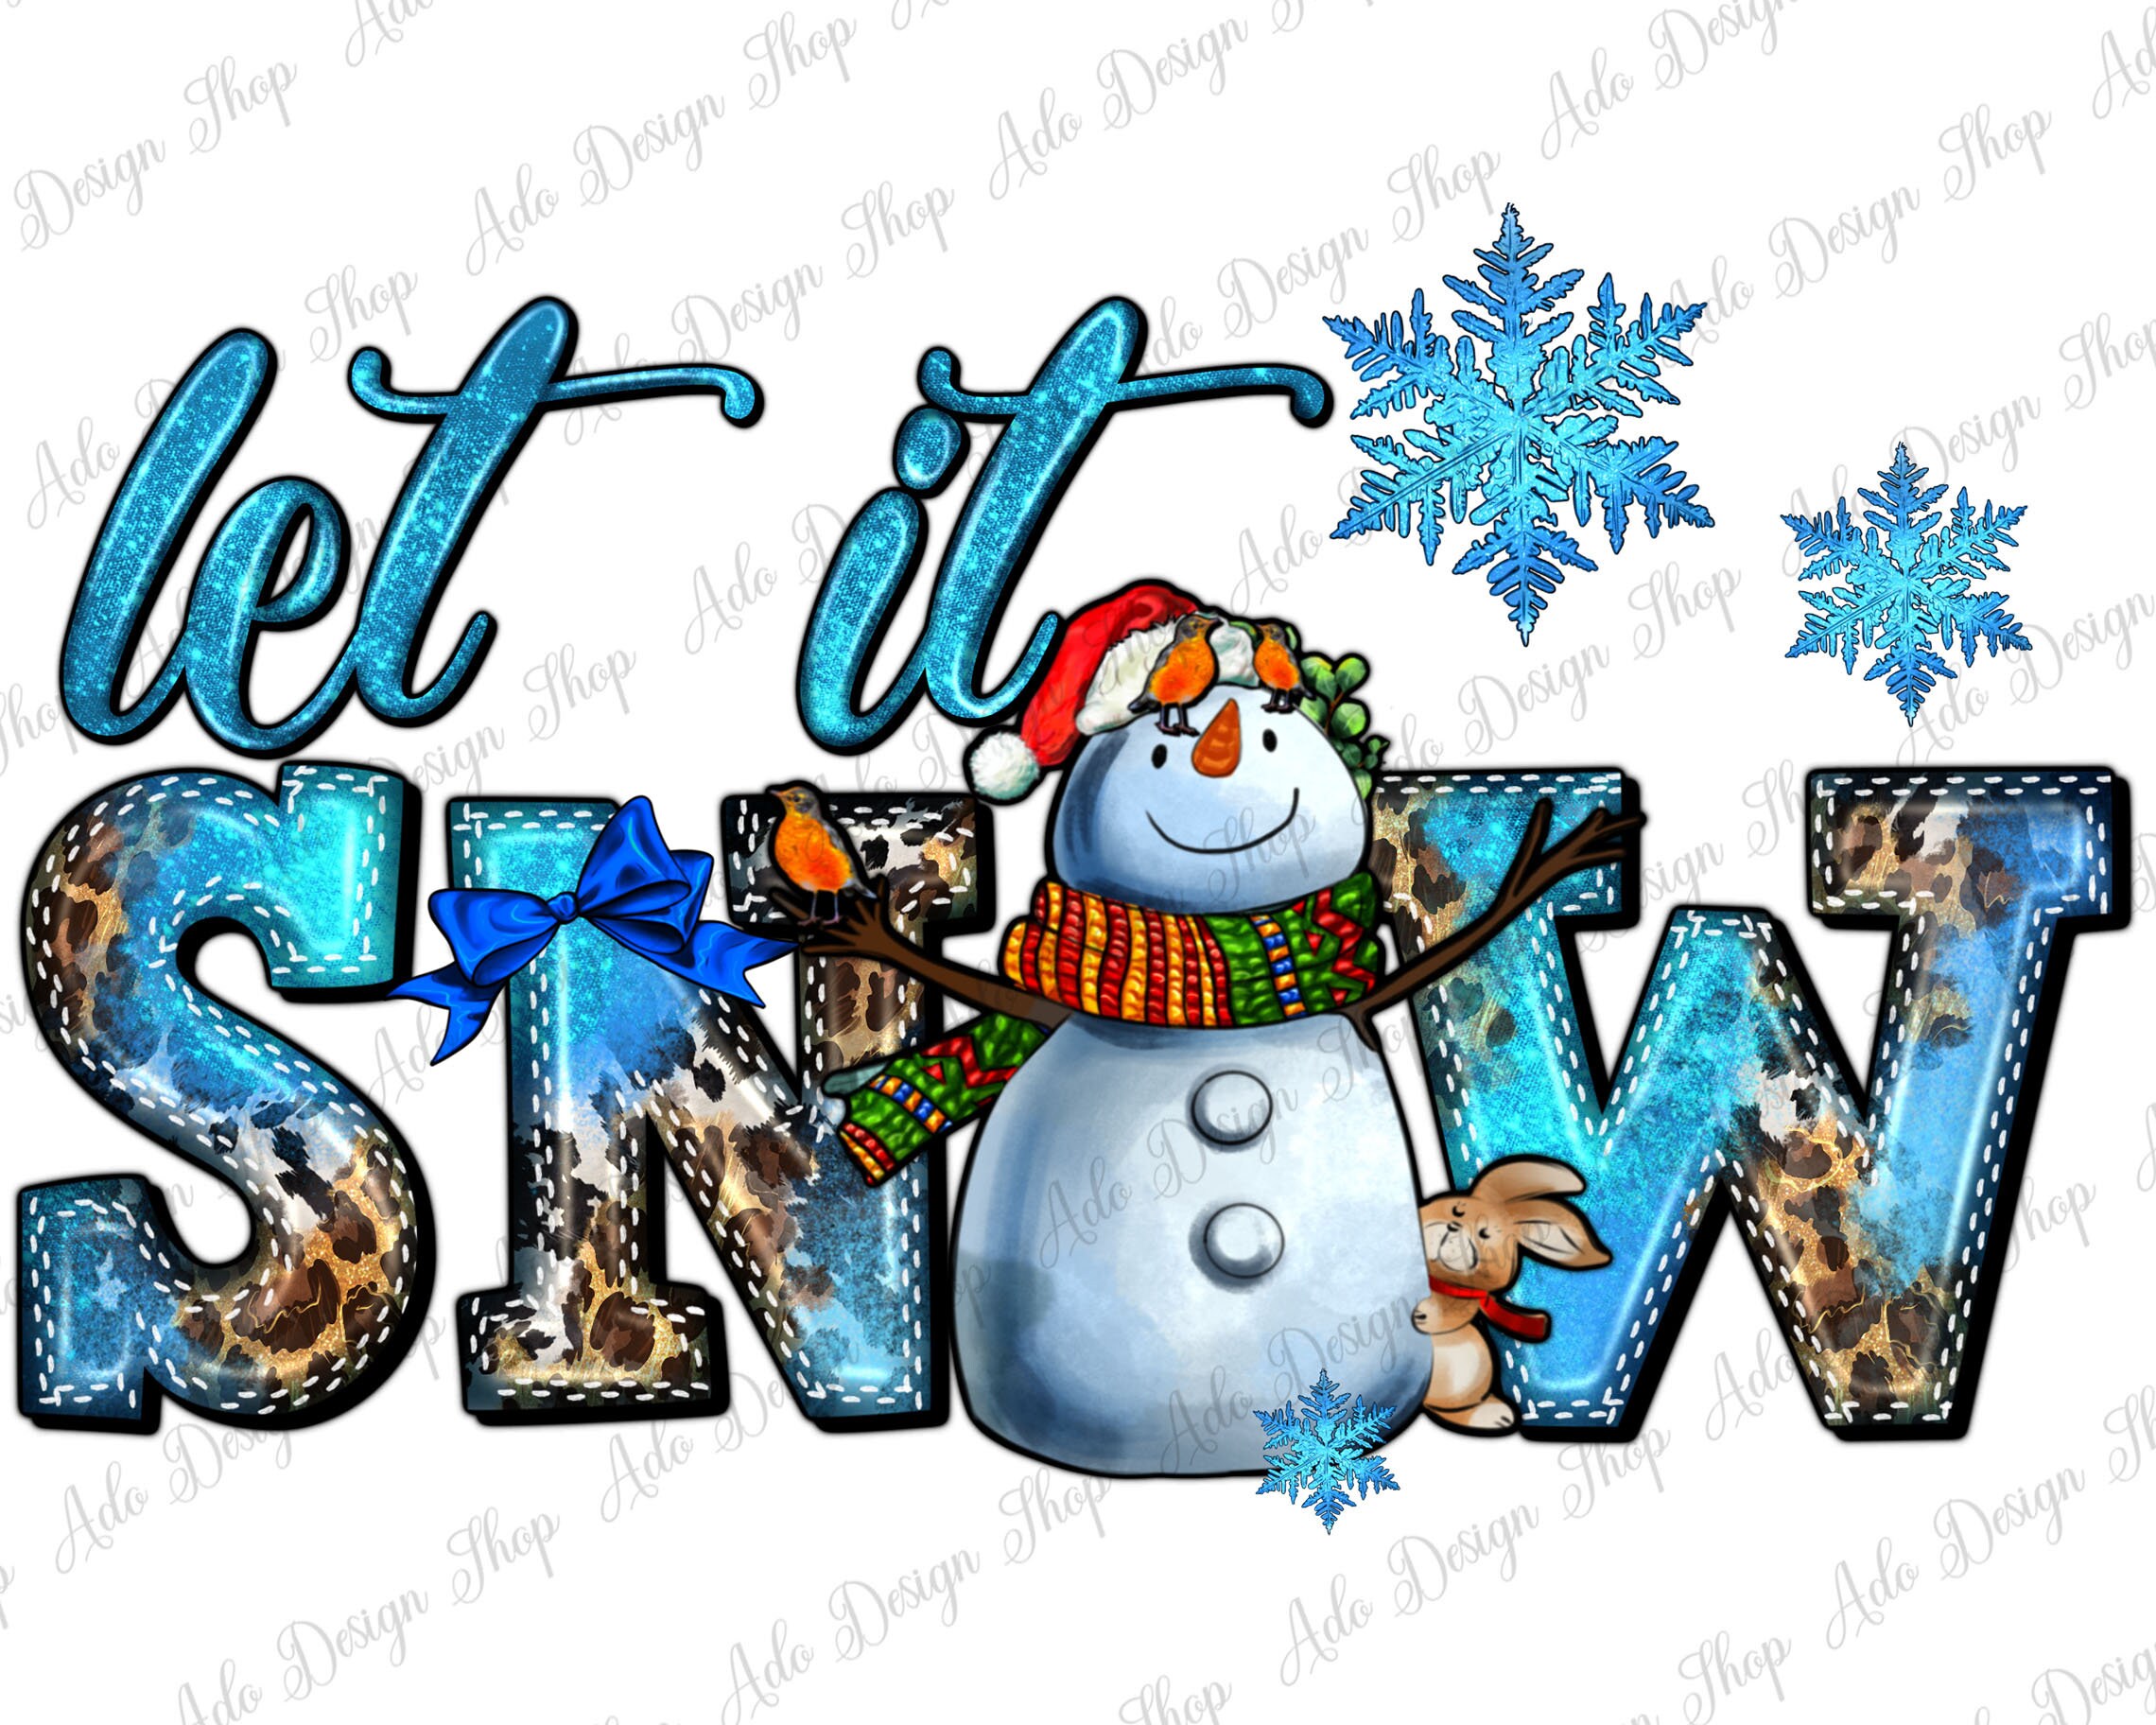 Let It Snow Snowman 30 oz Tumbler Sublimation Design